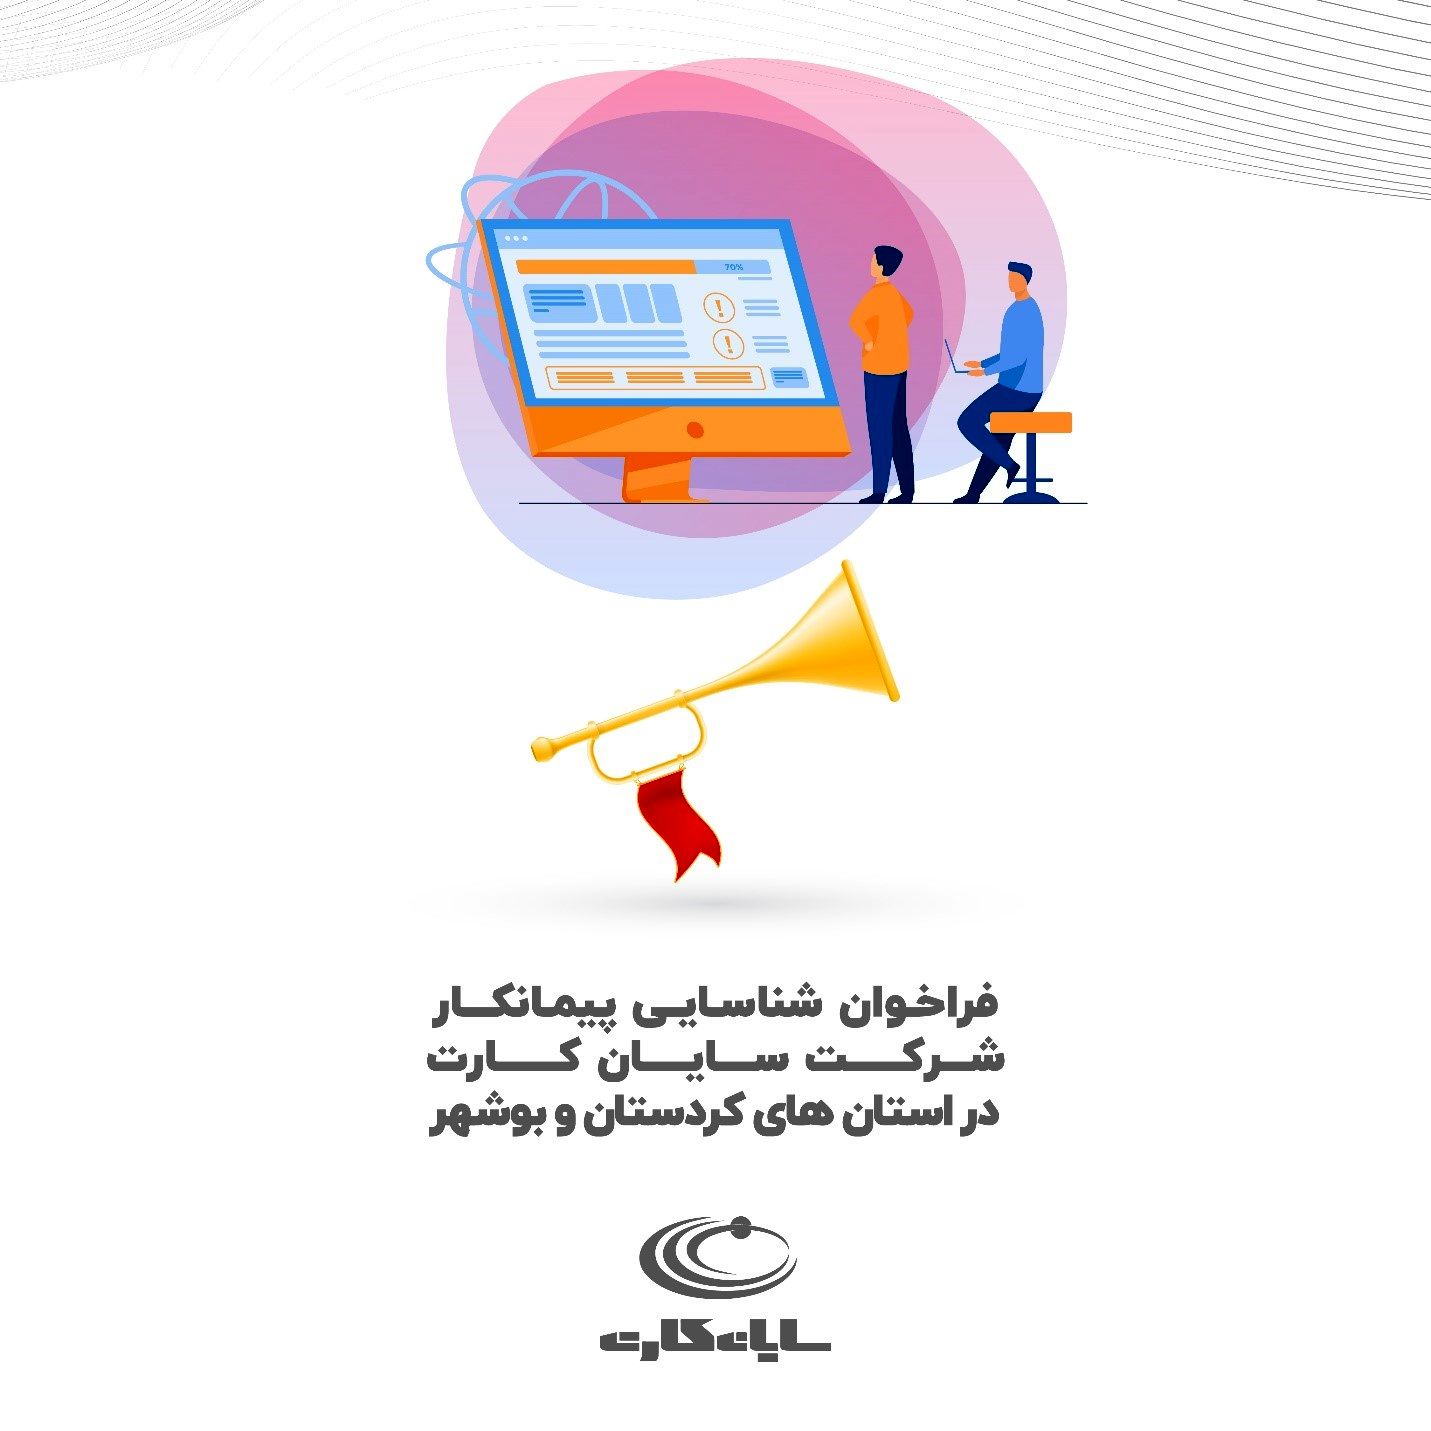 فراخوان شناسایی پیمانکار شرکت سایان کارت در استان های کردستان و بوشهر